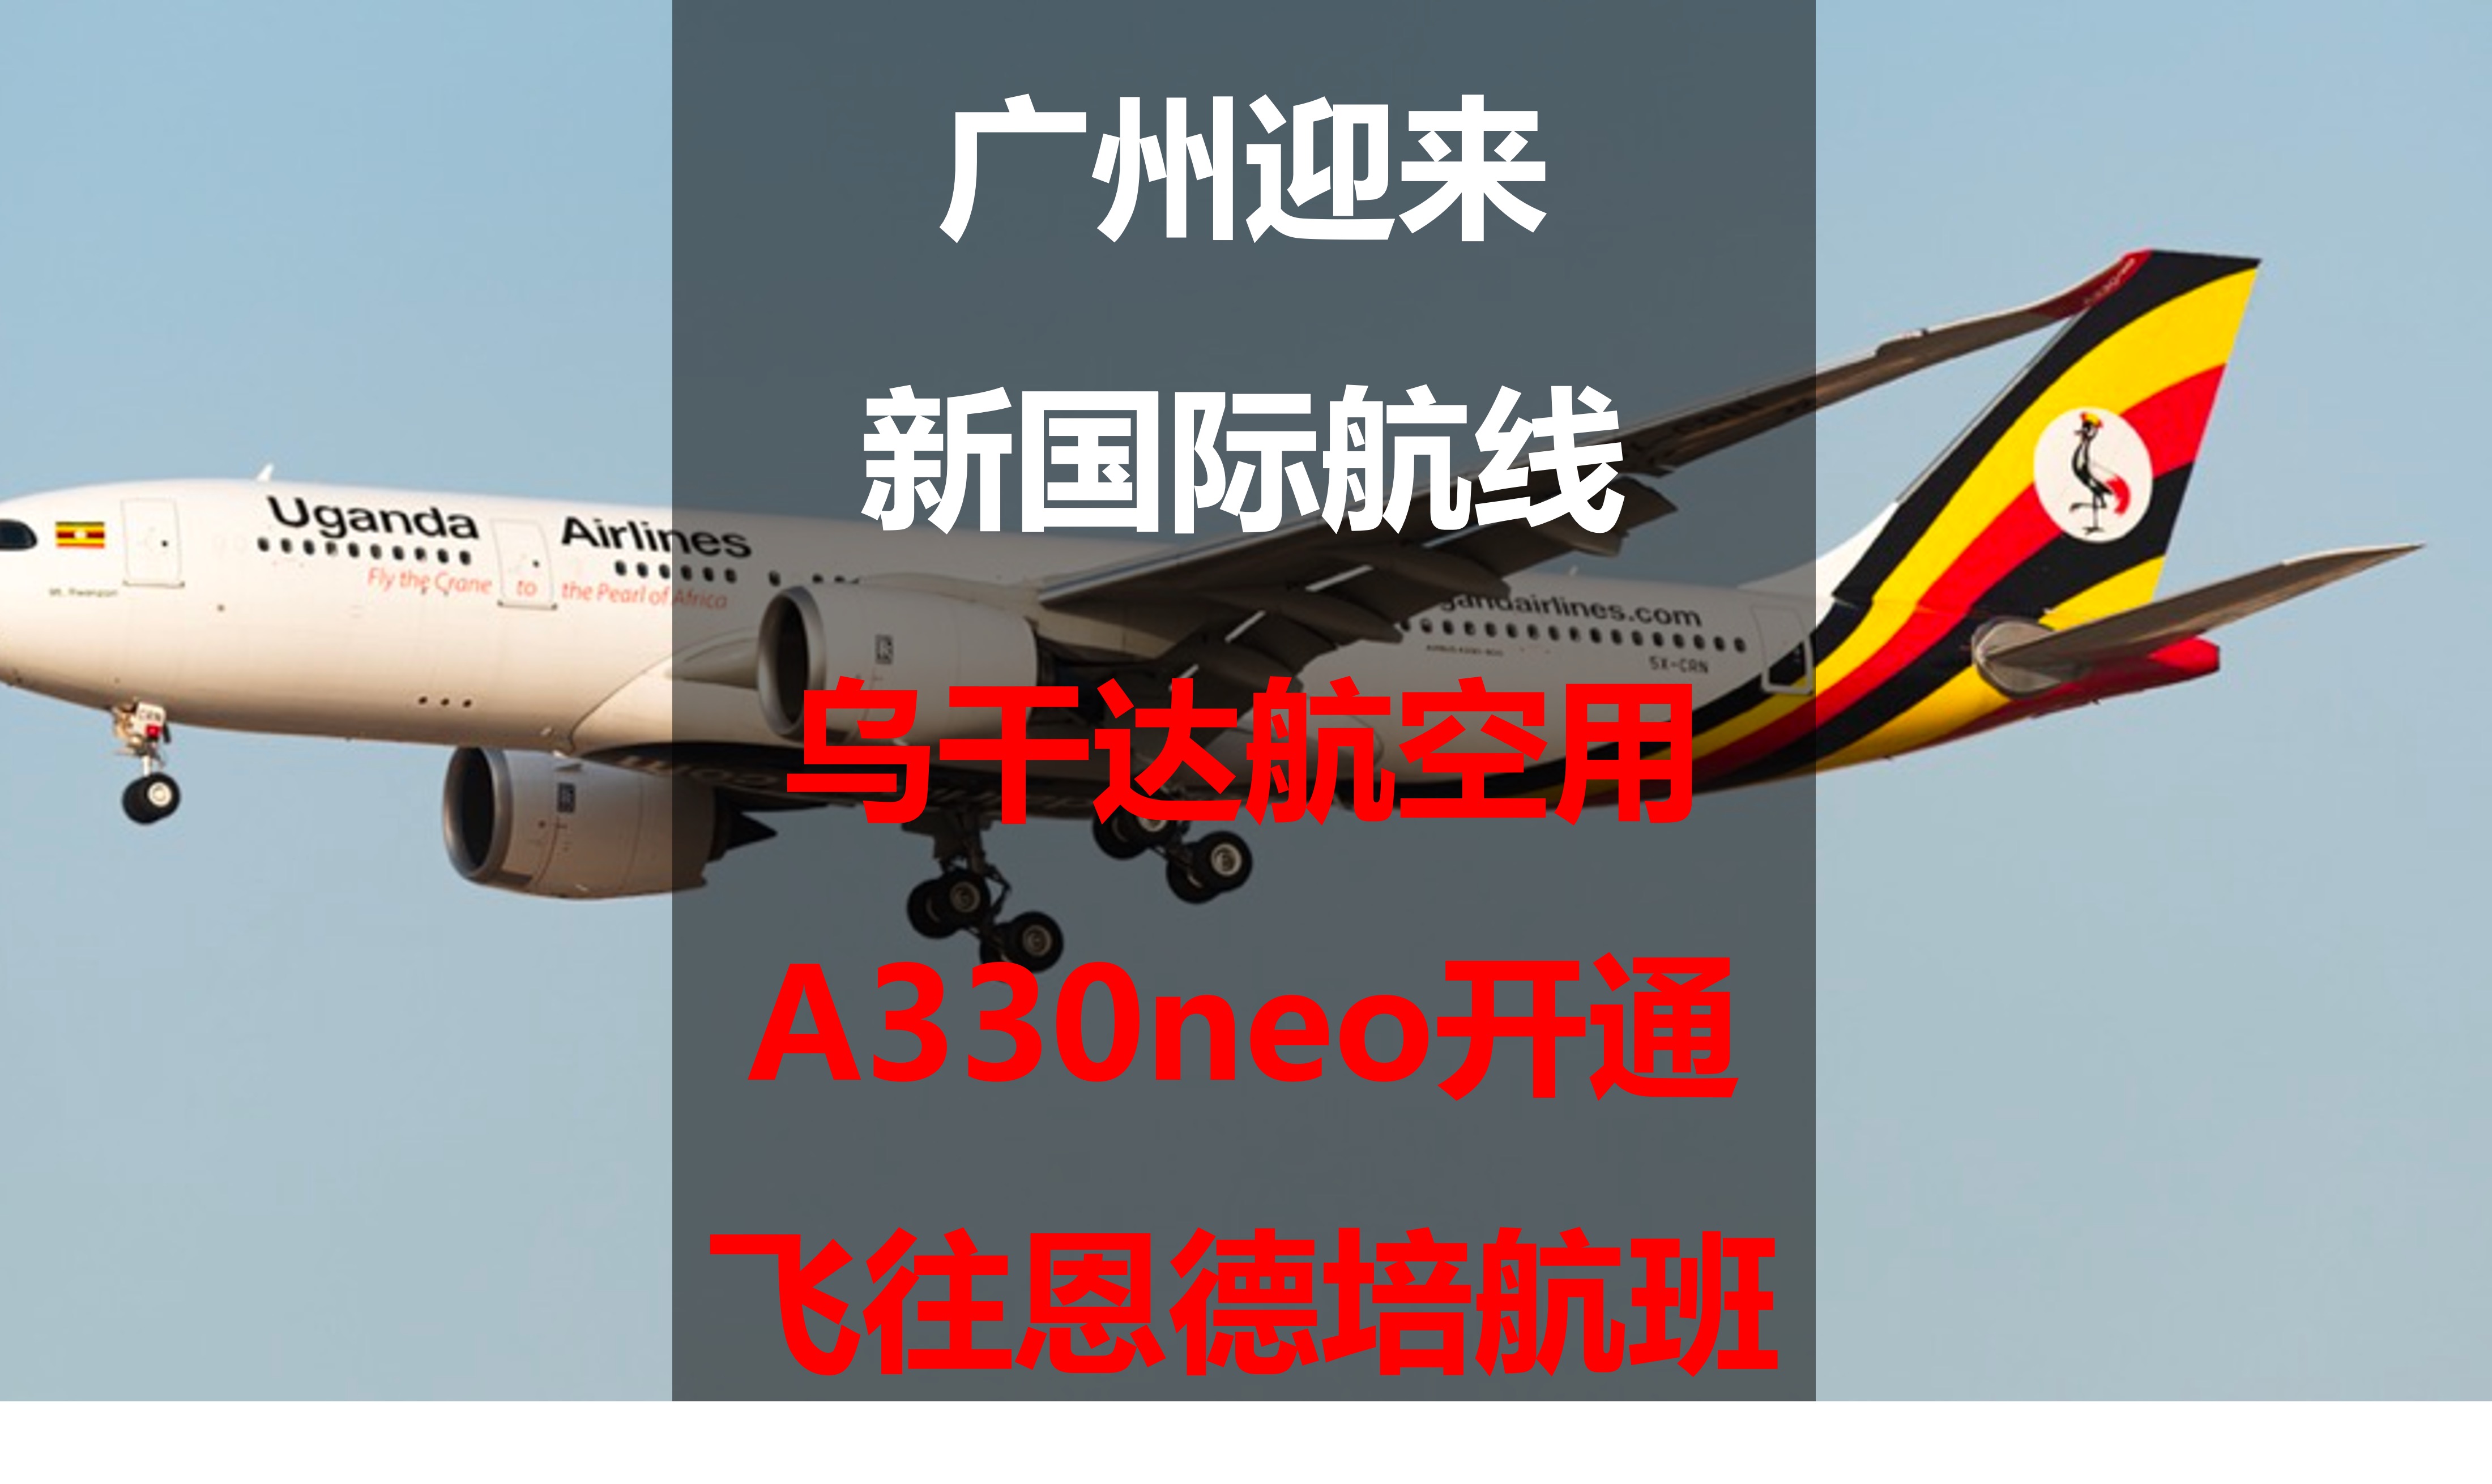 青岛机场携手东航、南航，在上海、广州等航线投入宽体机运营客运快线